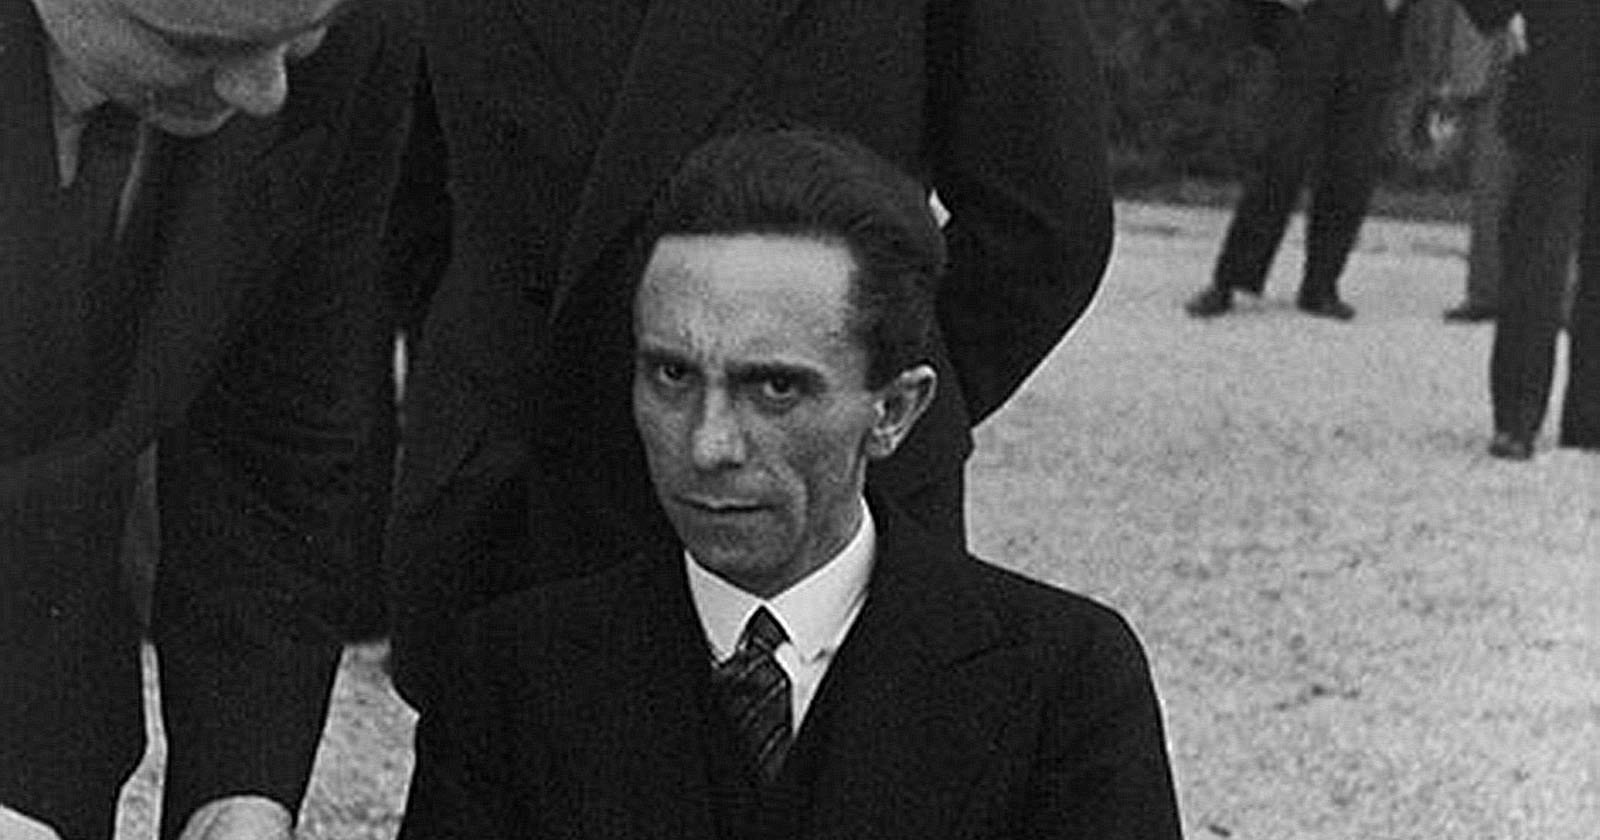 eyes-of-hate-photo-by-Alfred-Eisenstaedt-showing-Joseph-Goebbels.jpg